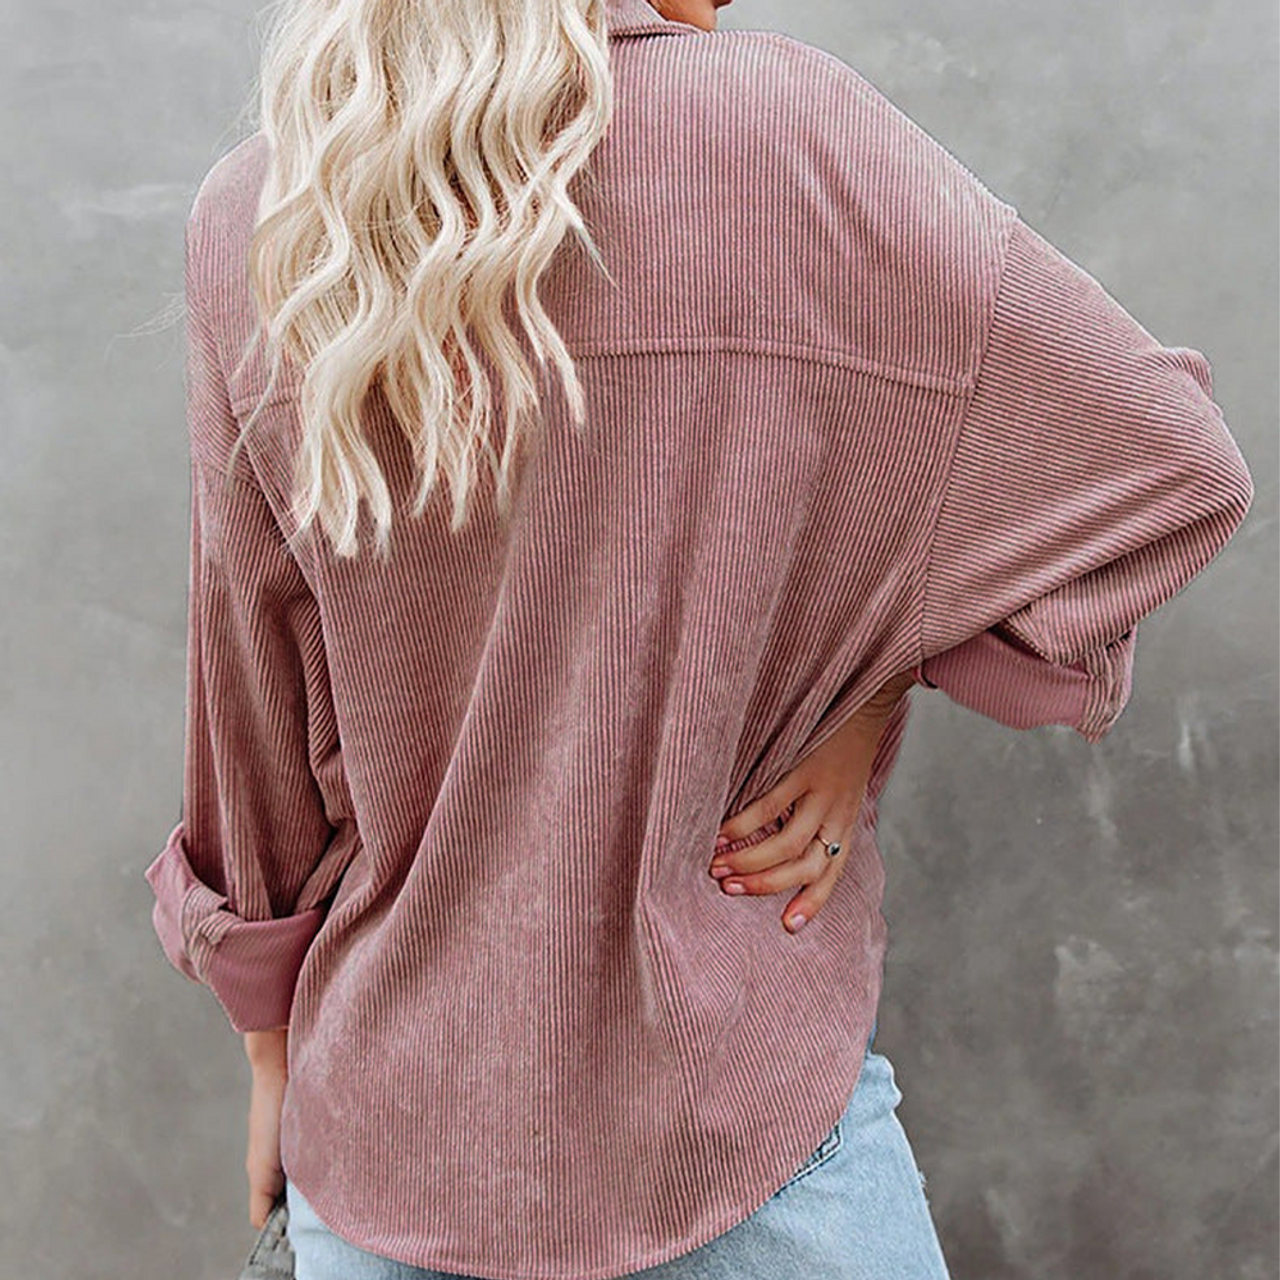 Women's Slouchy Oversized Corduroy Shirt Jacket  product image